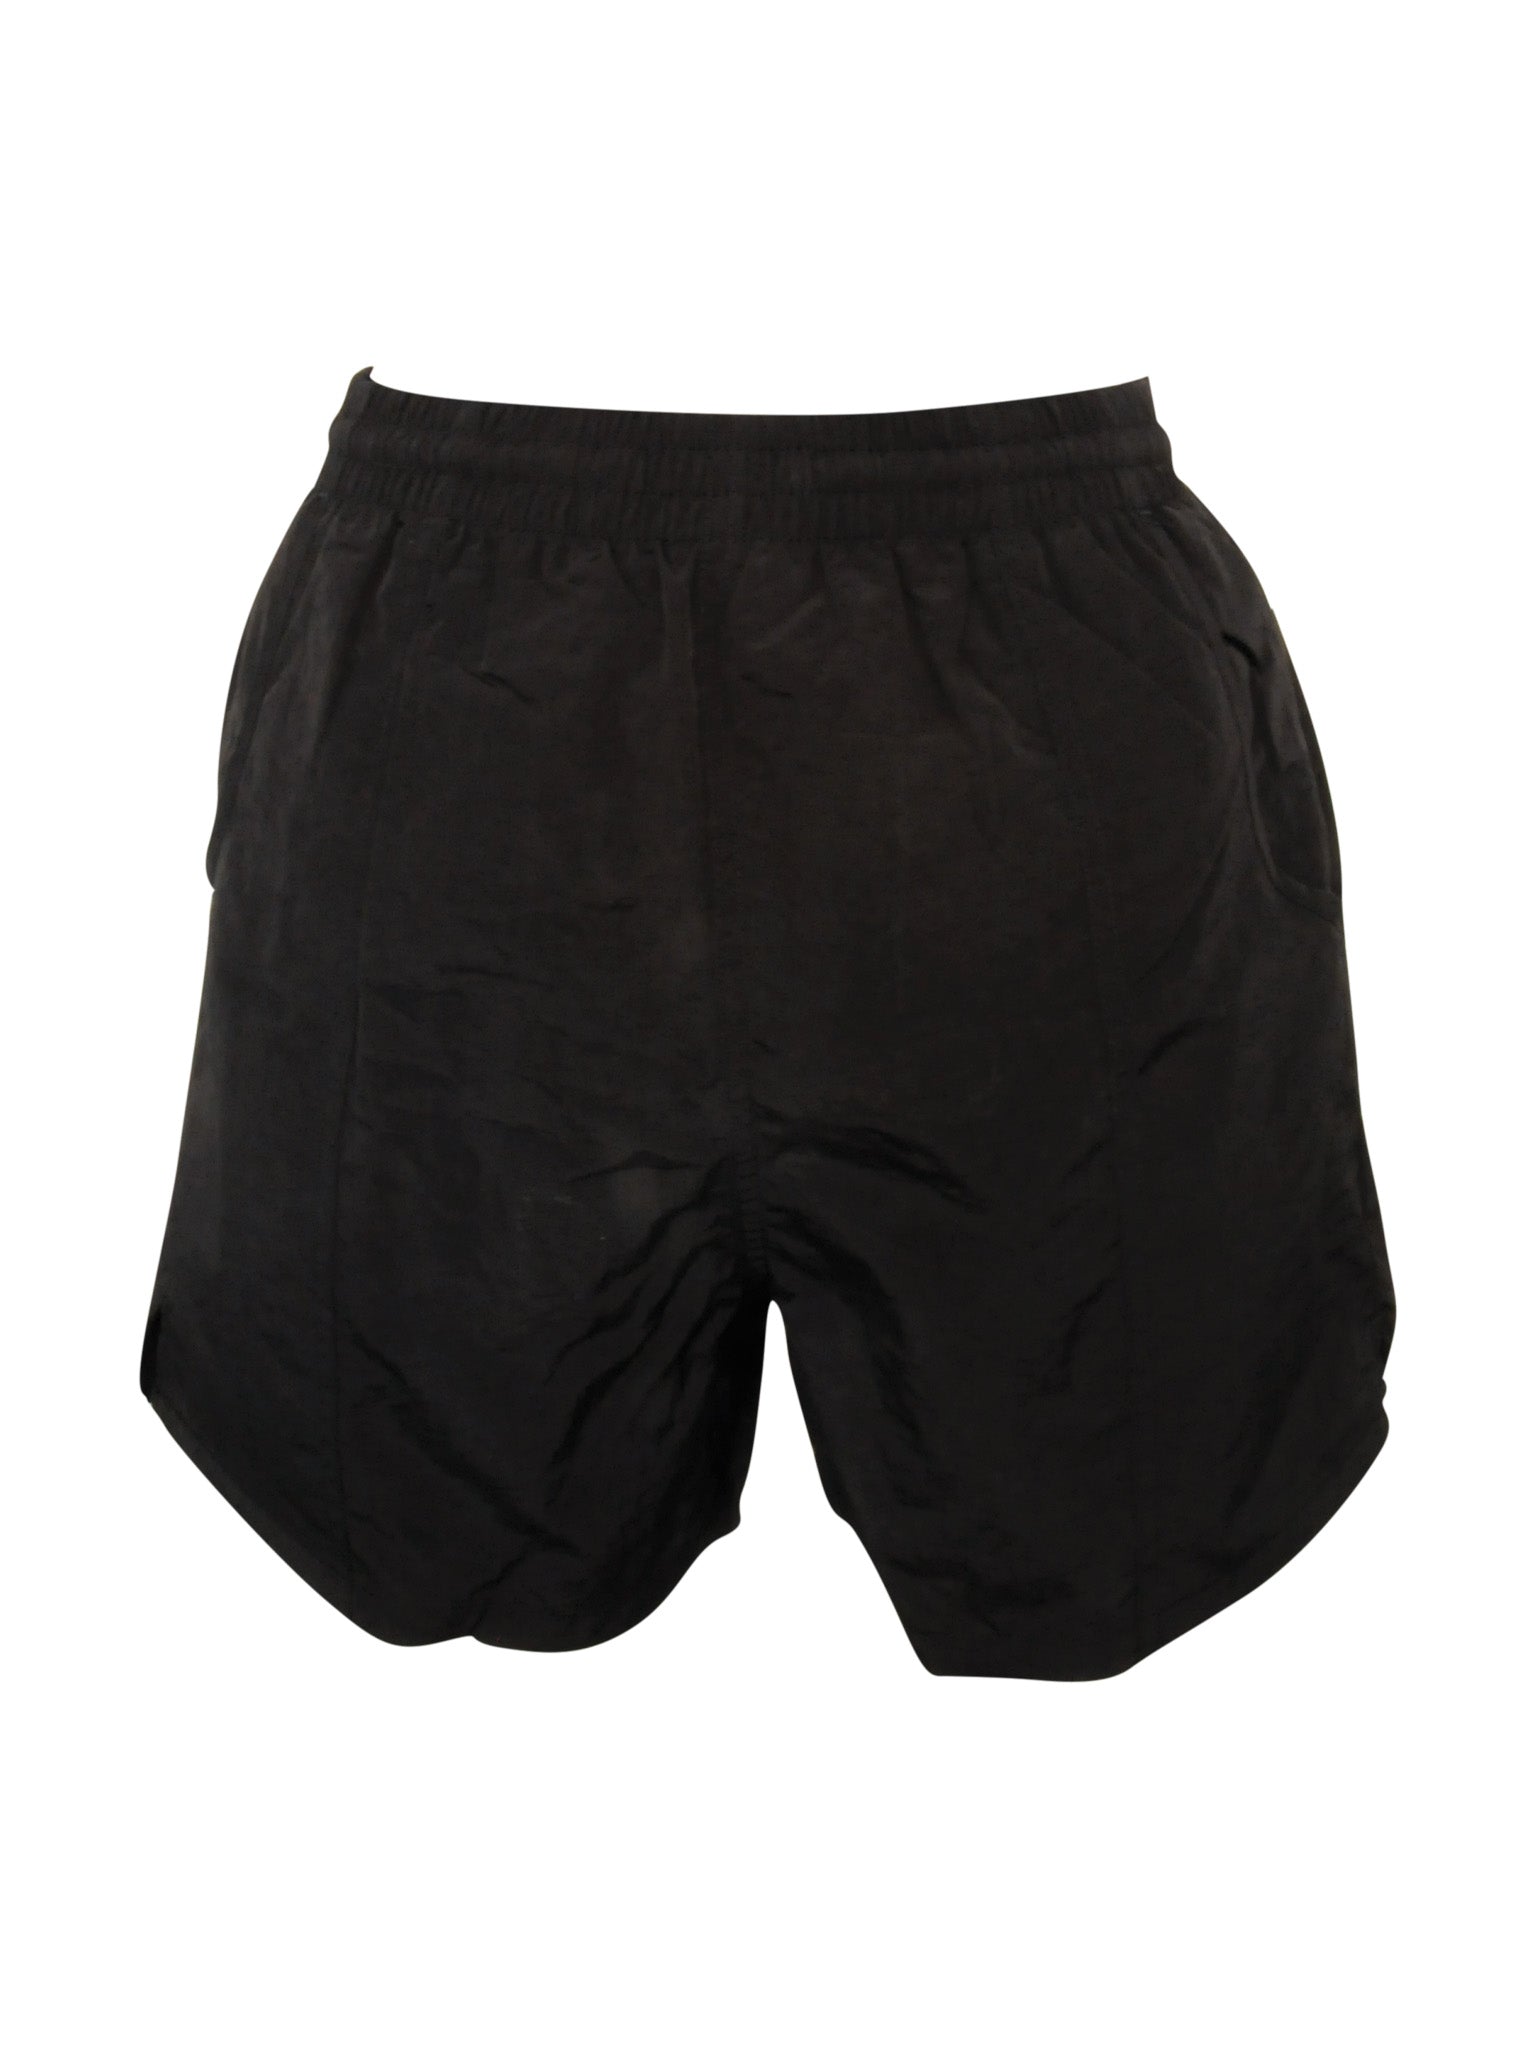 Aquam Tactel Shorts